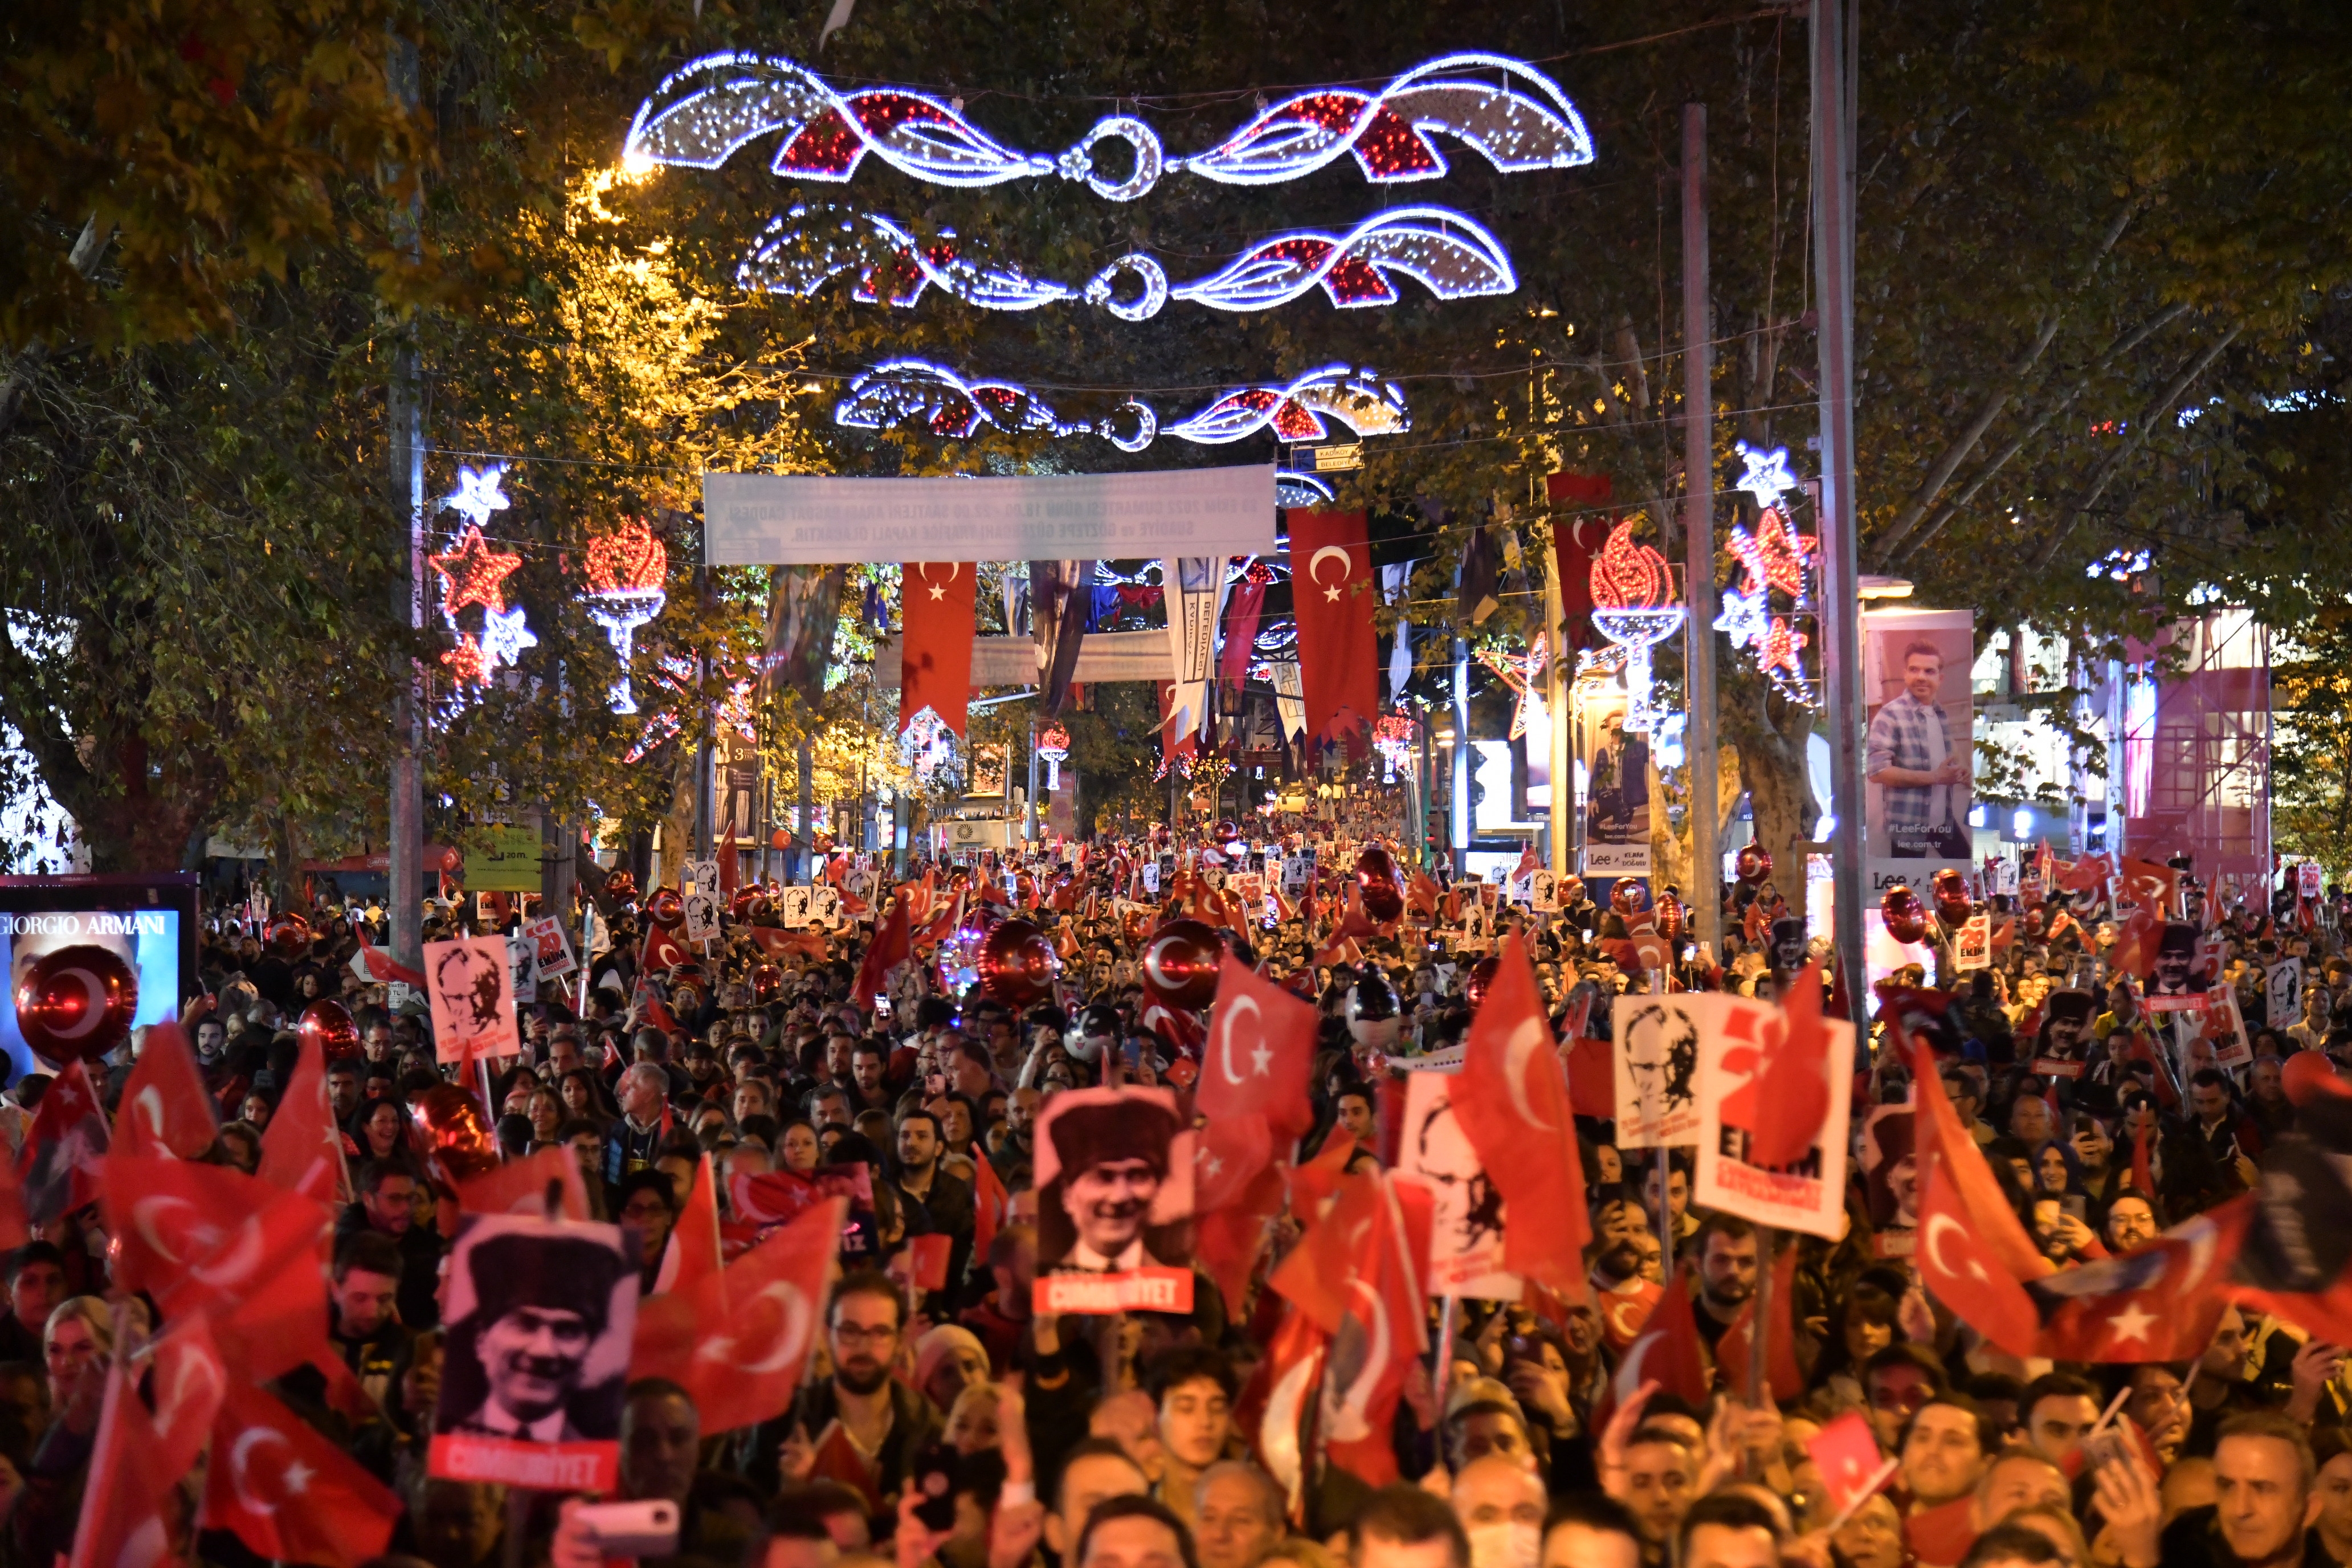 شهدت تركيا منذ تأسيسها تحولات كبيرة في السياسة والاقتصاد والمجتمع